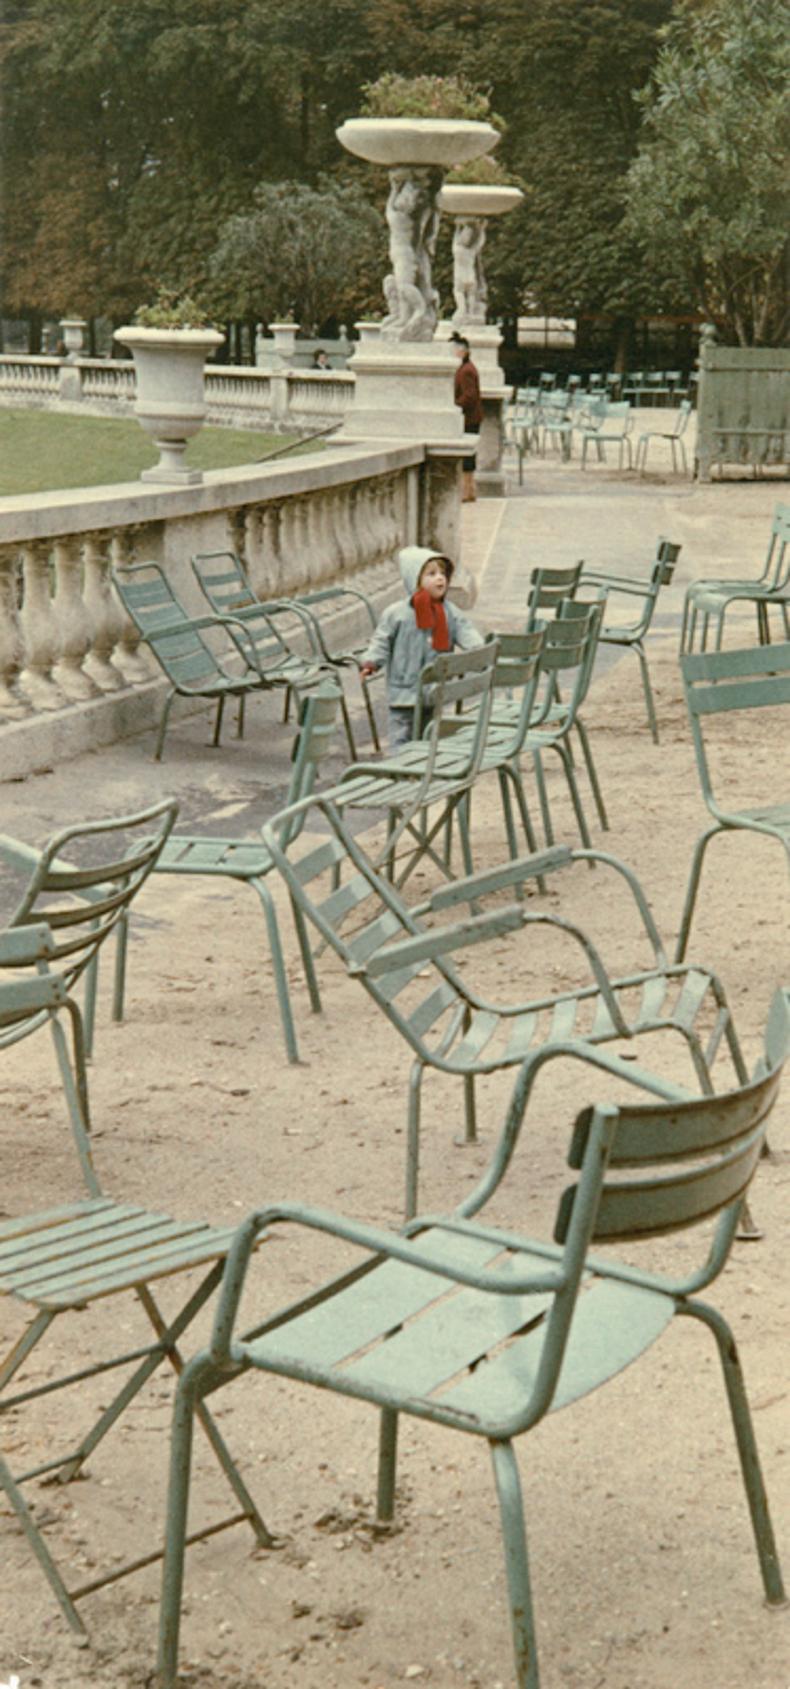 Parc parisien de la série Paris en couleurs 1956-61
Par Peter Cornelius

Format géant 60 x 40 inches / 152 x 101 cm de papier
Imprimé 2022
Impression au pigment d'archivage 

Options d'encadrement et de taille disponibles - Veuillez vous